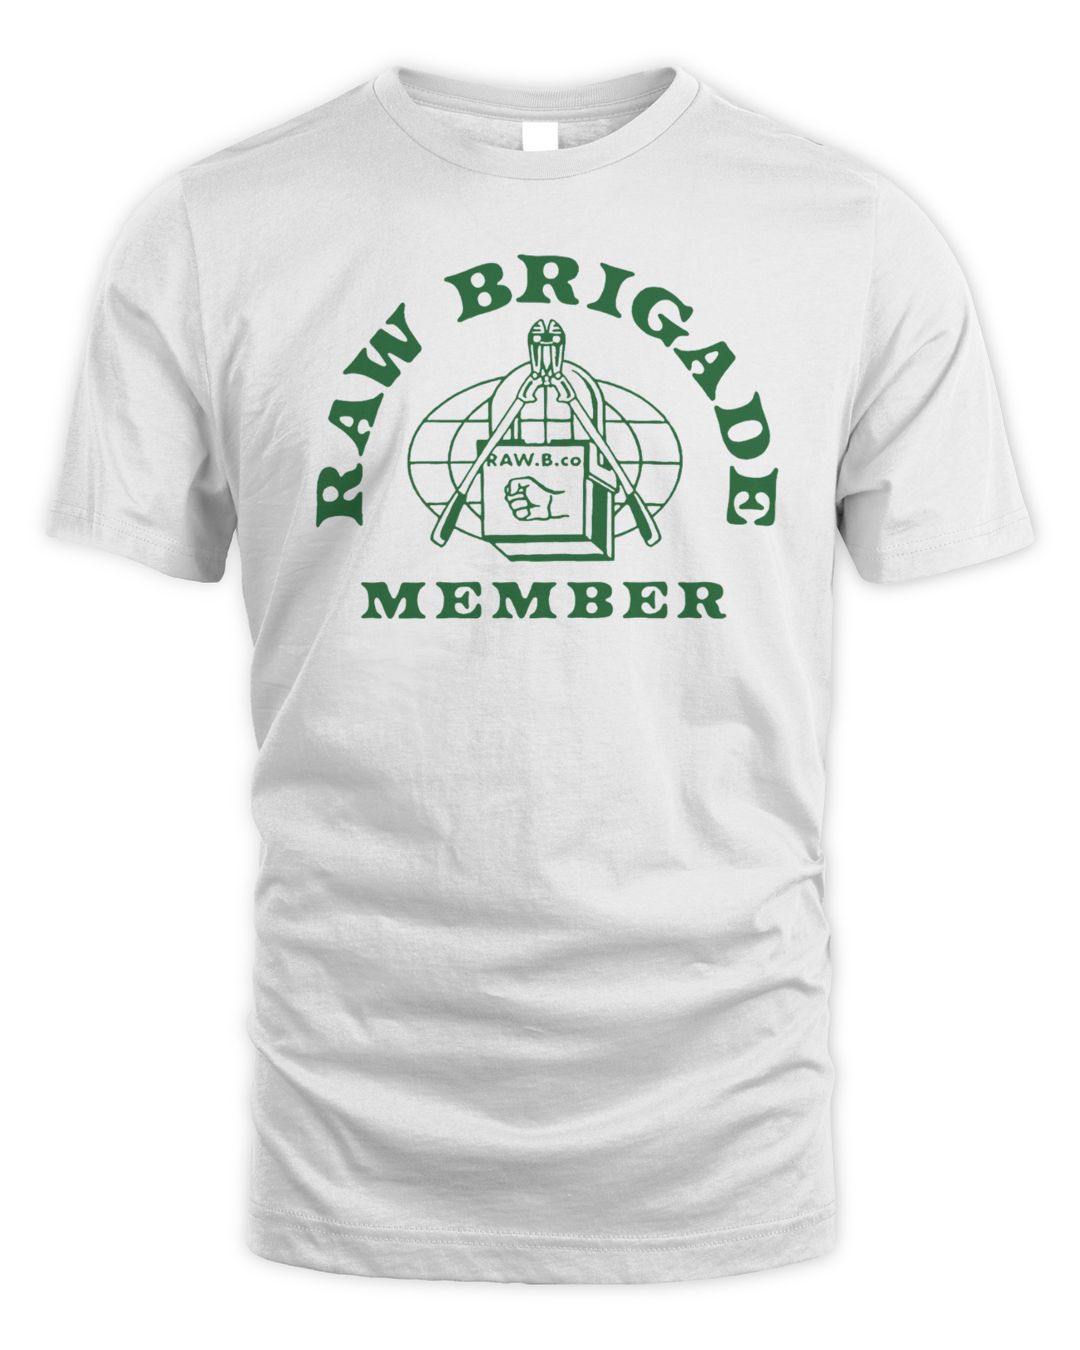 Brass City Merch Raw Brigade Member Shirt